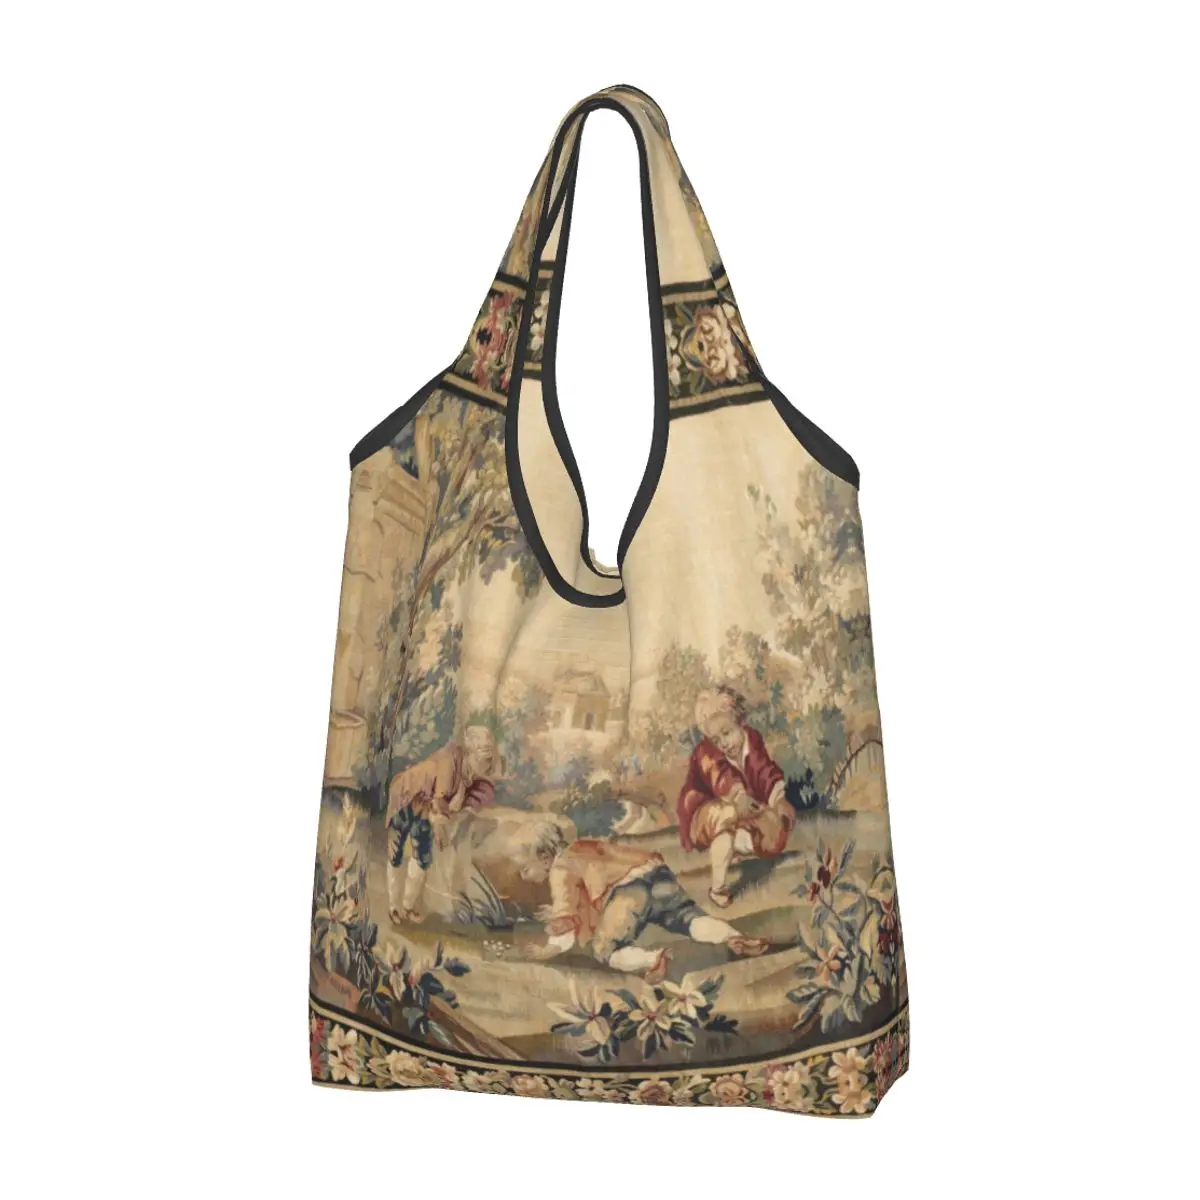 

Большие многоразовые антикварные французские продуктовые сумки Aubusson, переработанные складные винтажные богемные эко-сумки для покупок в старинном Европейском стиле, моющиеся